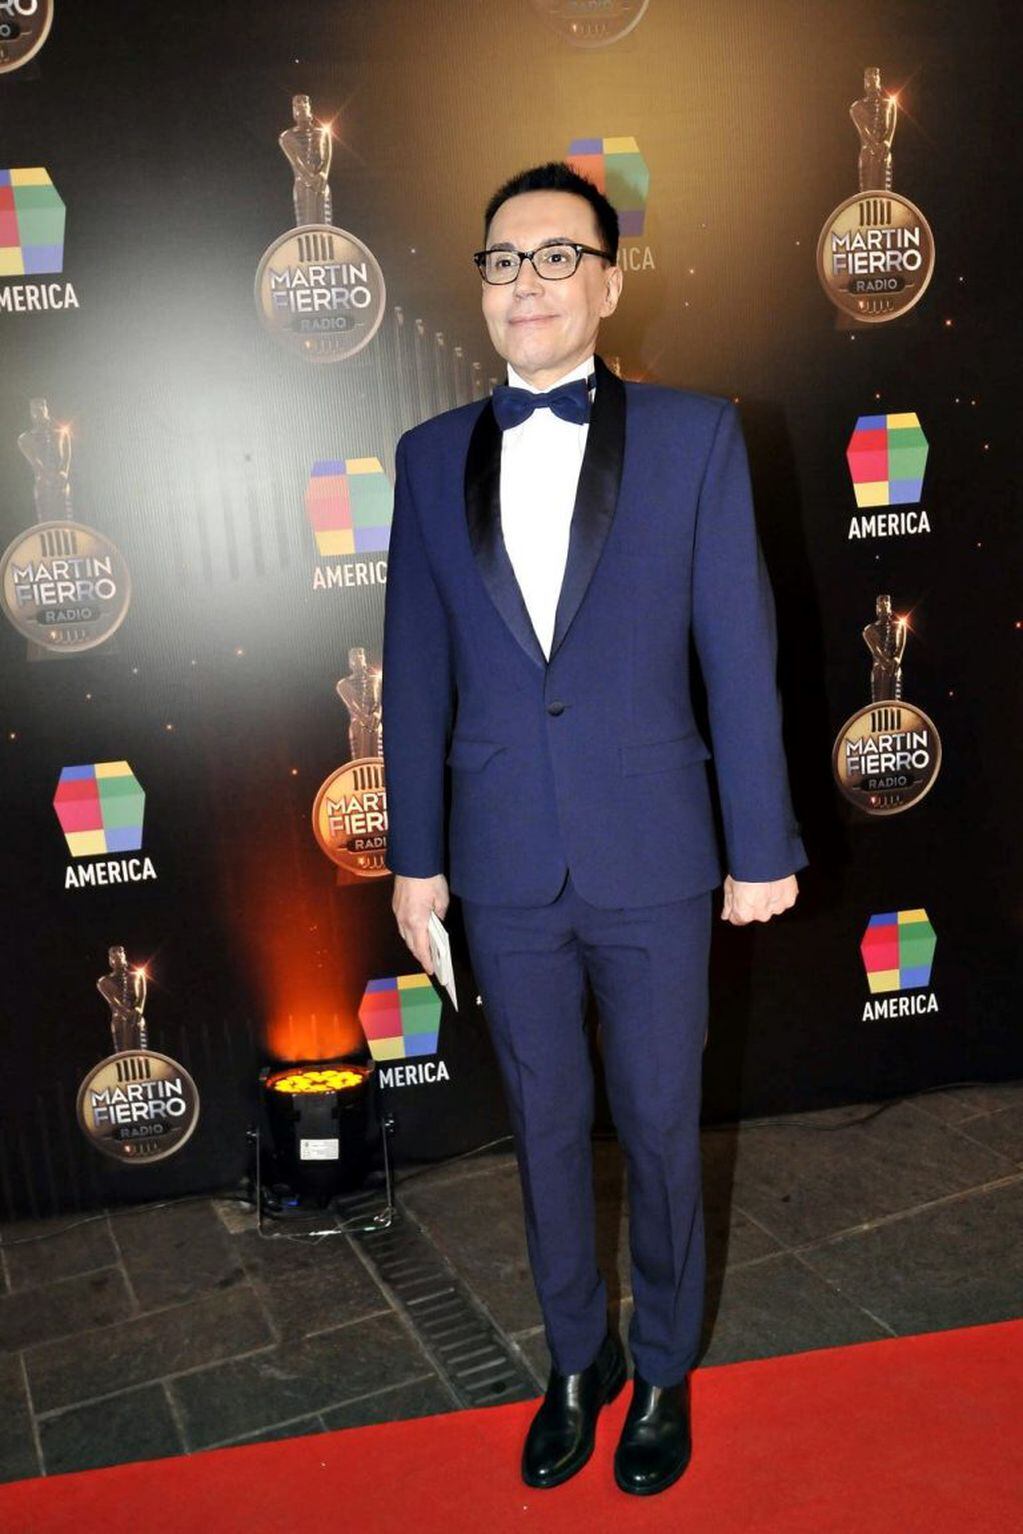 Martín Fierro de Radio 2019